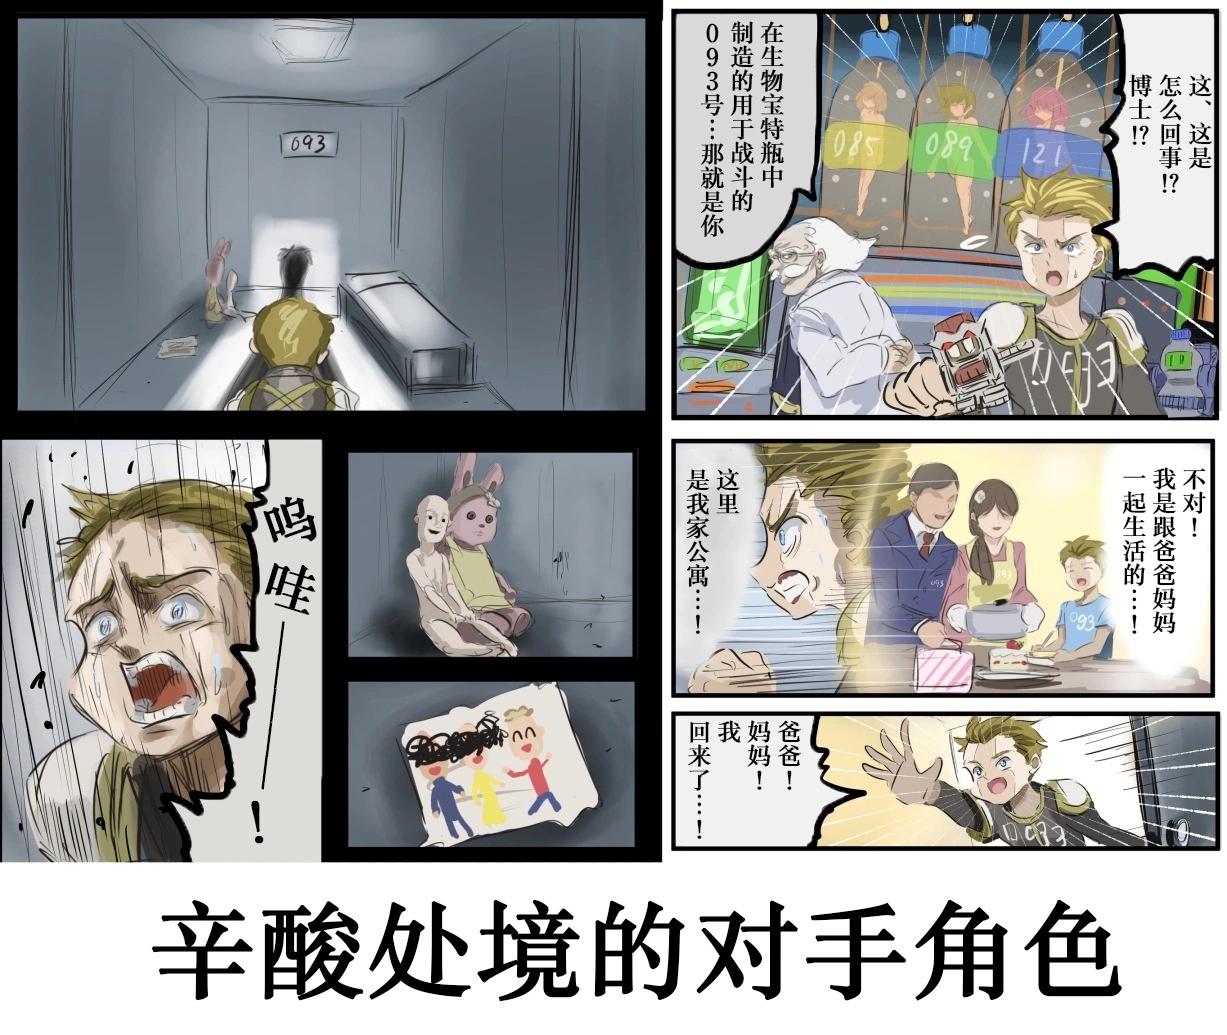 カコミスル老师四格合集 - 平成广告漫画风瓶盖人（其5） - 1